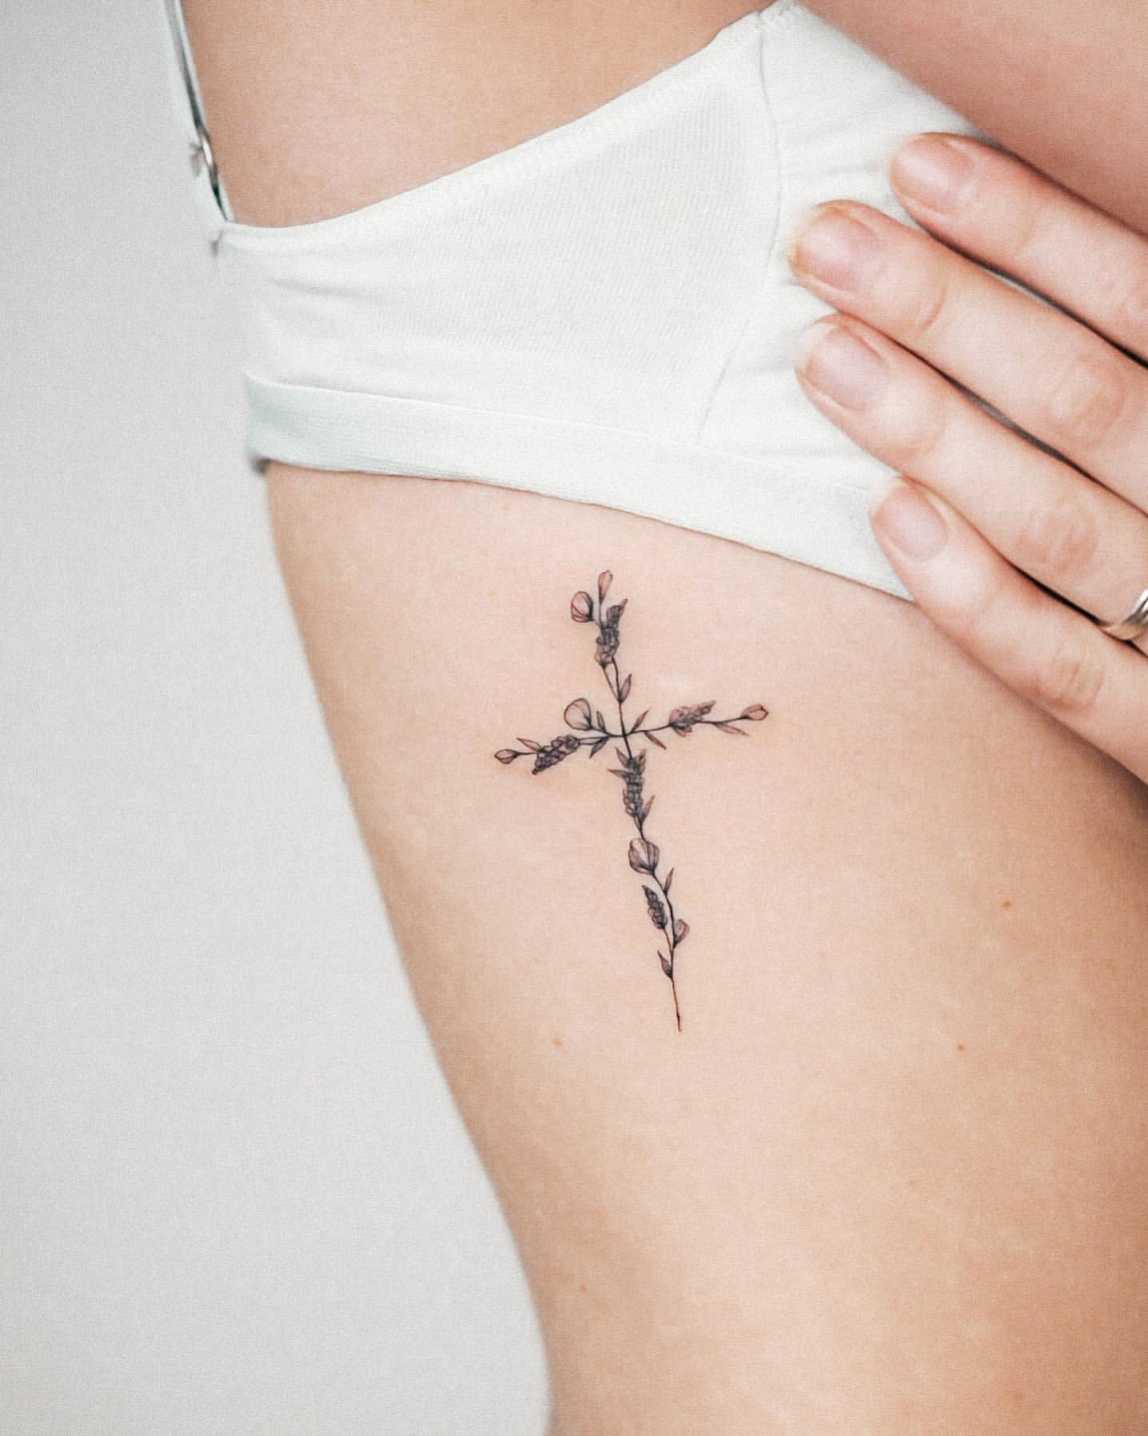 Meaningful Cross Tattoo Ideas For Women In